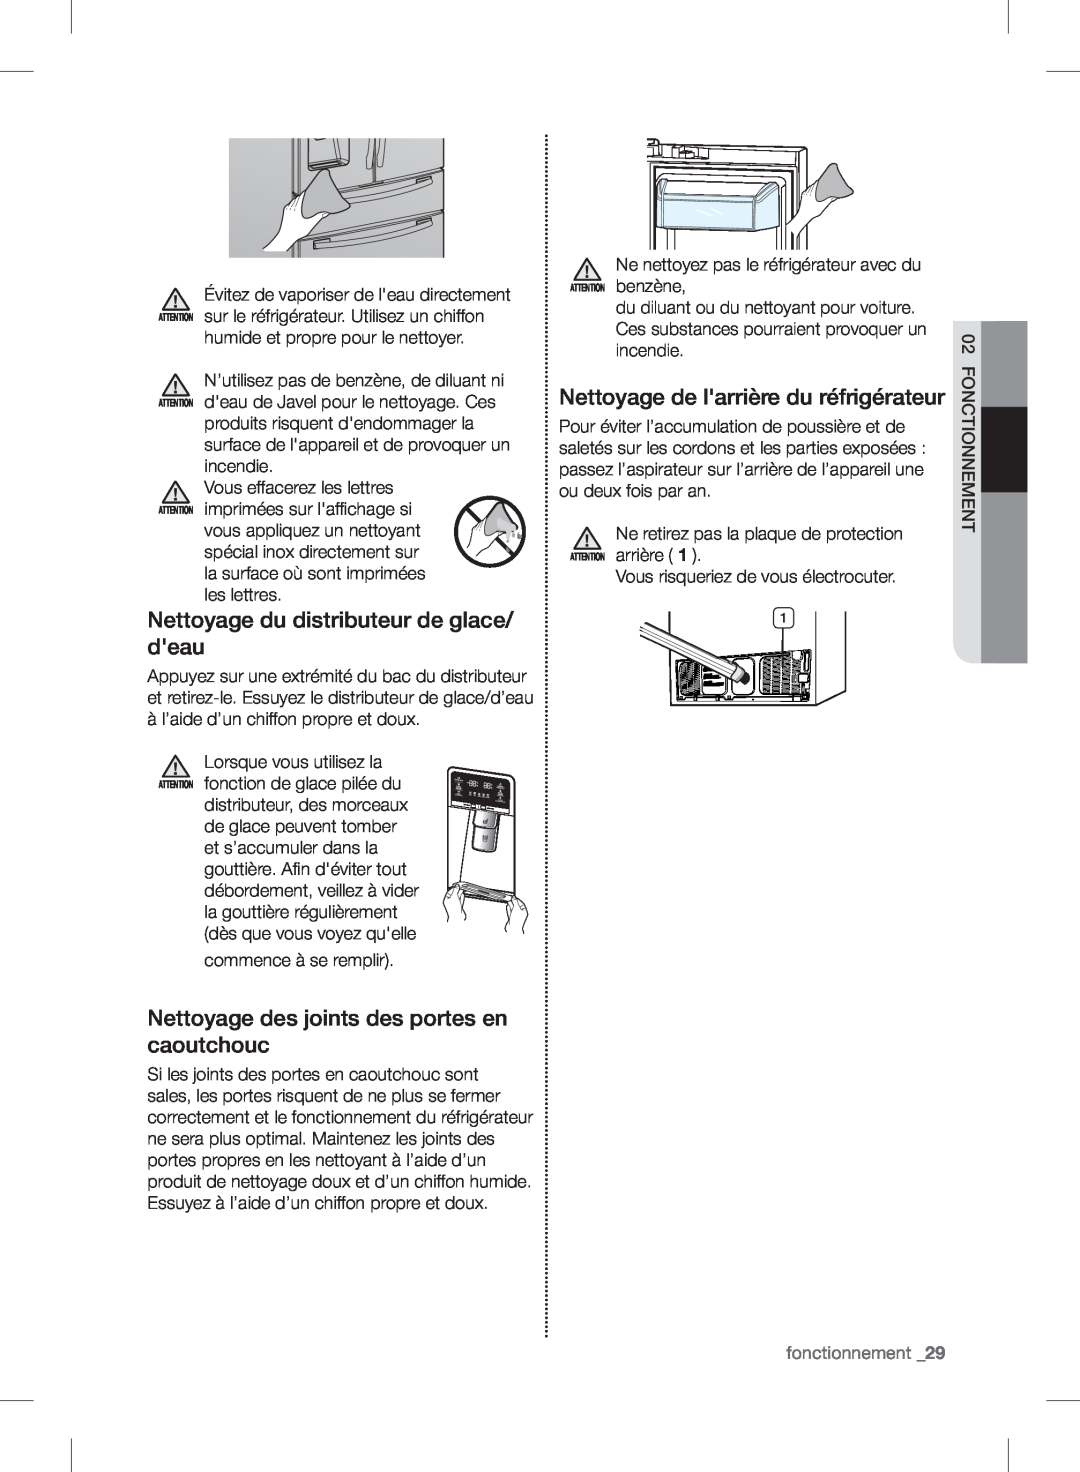 Samsung RF24FSEDBSR user manual Nettoyage du distributeur de glace/ deau, Nettoyage des joints des portes en caoutchouc 